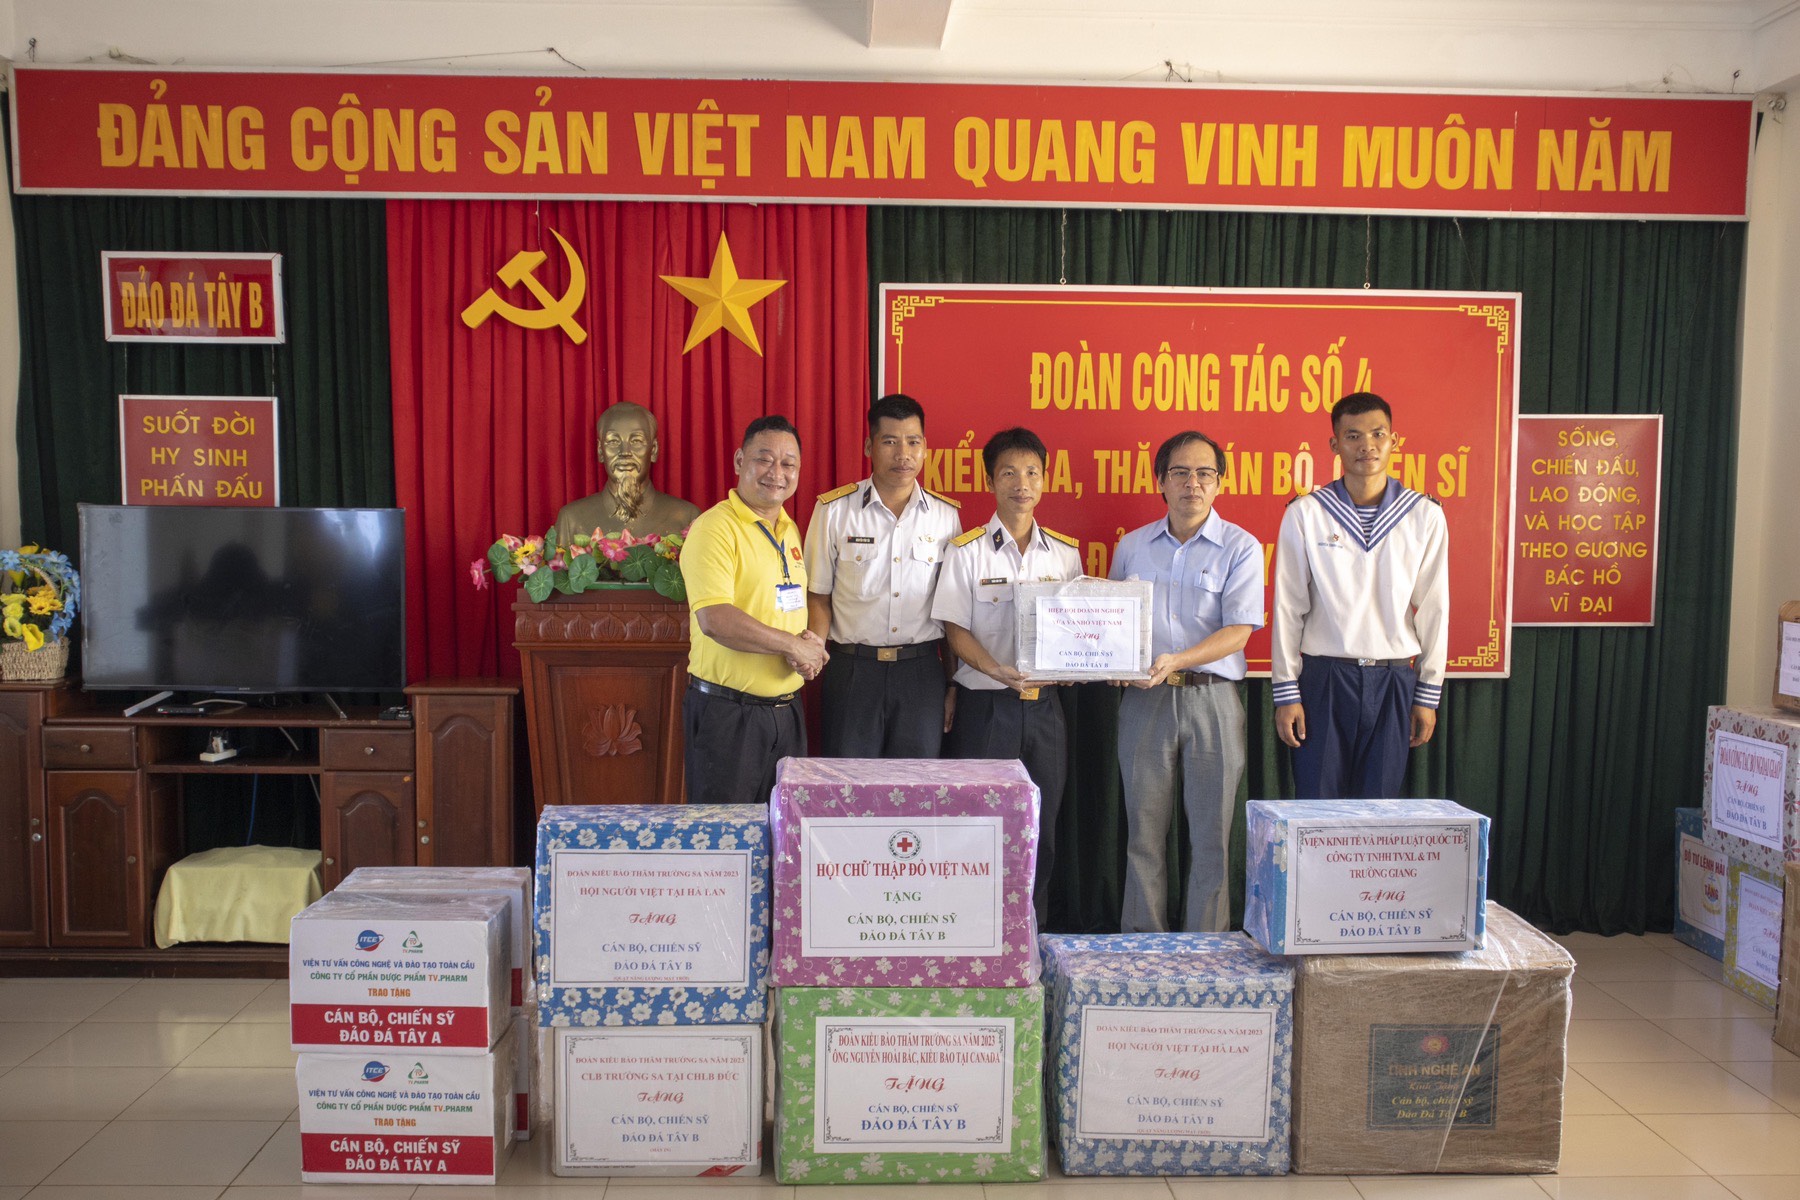 Đại diện Hiệp hội doanh nghiệp nhỏ và vừa Việt Nam tặng quà cho cán bộ, chiến sĩ điểm đảo Đá Tây B.